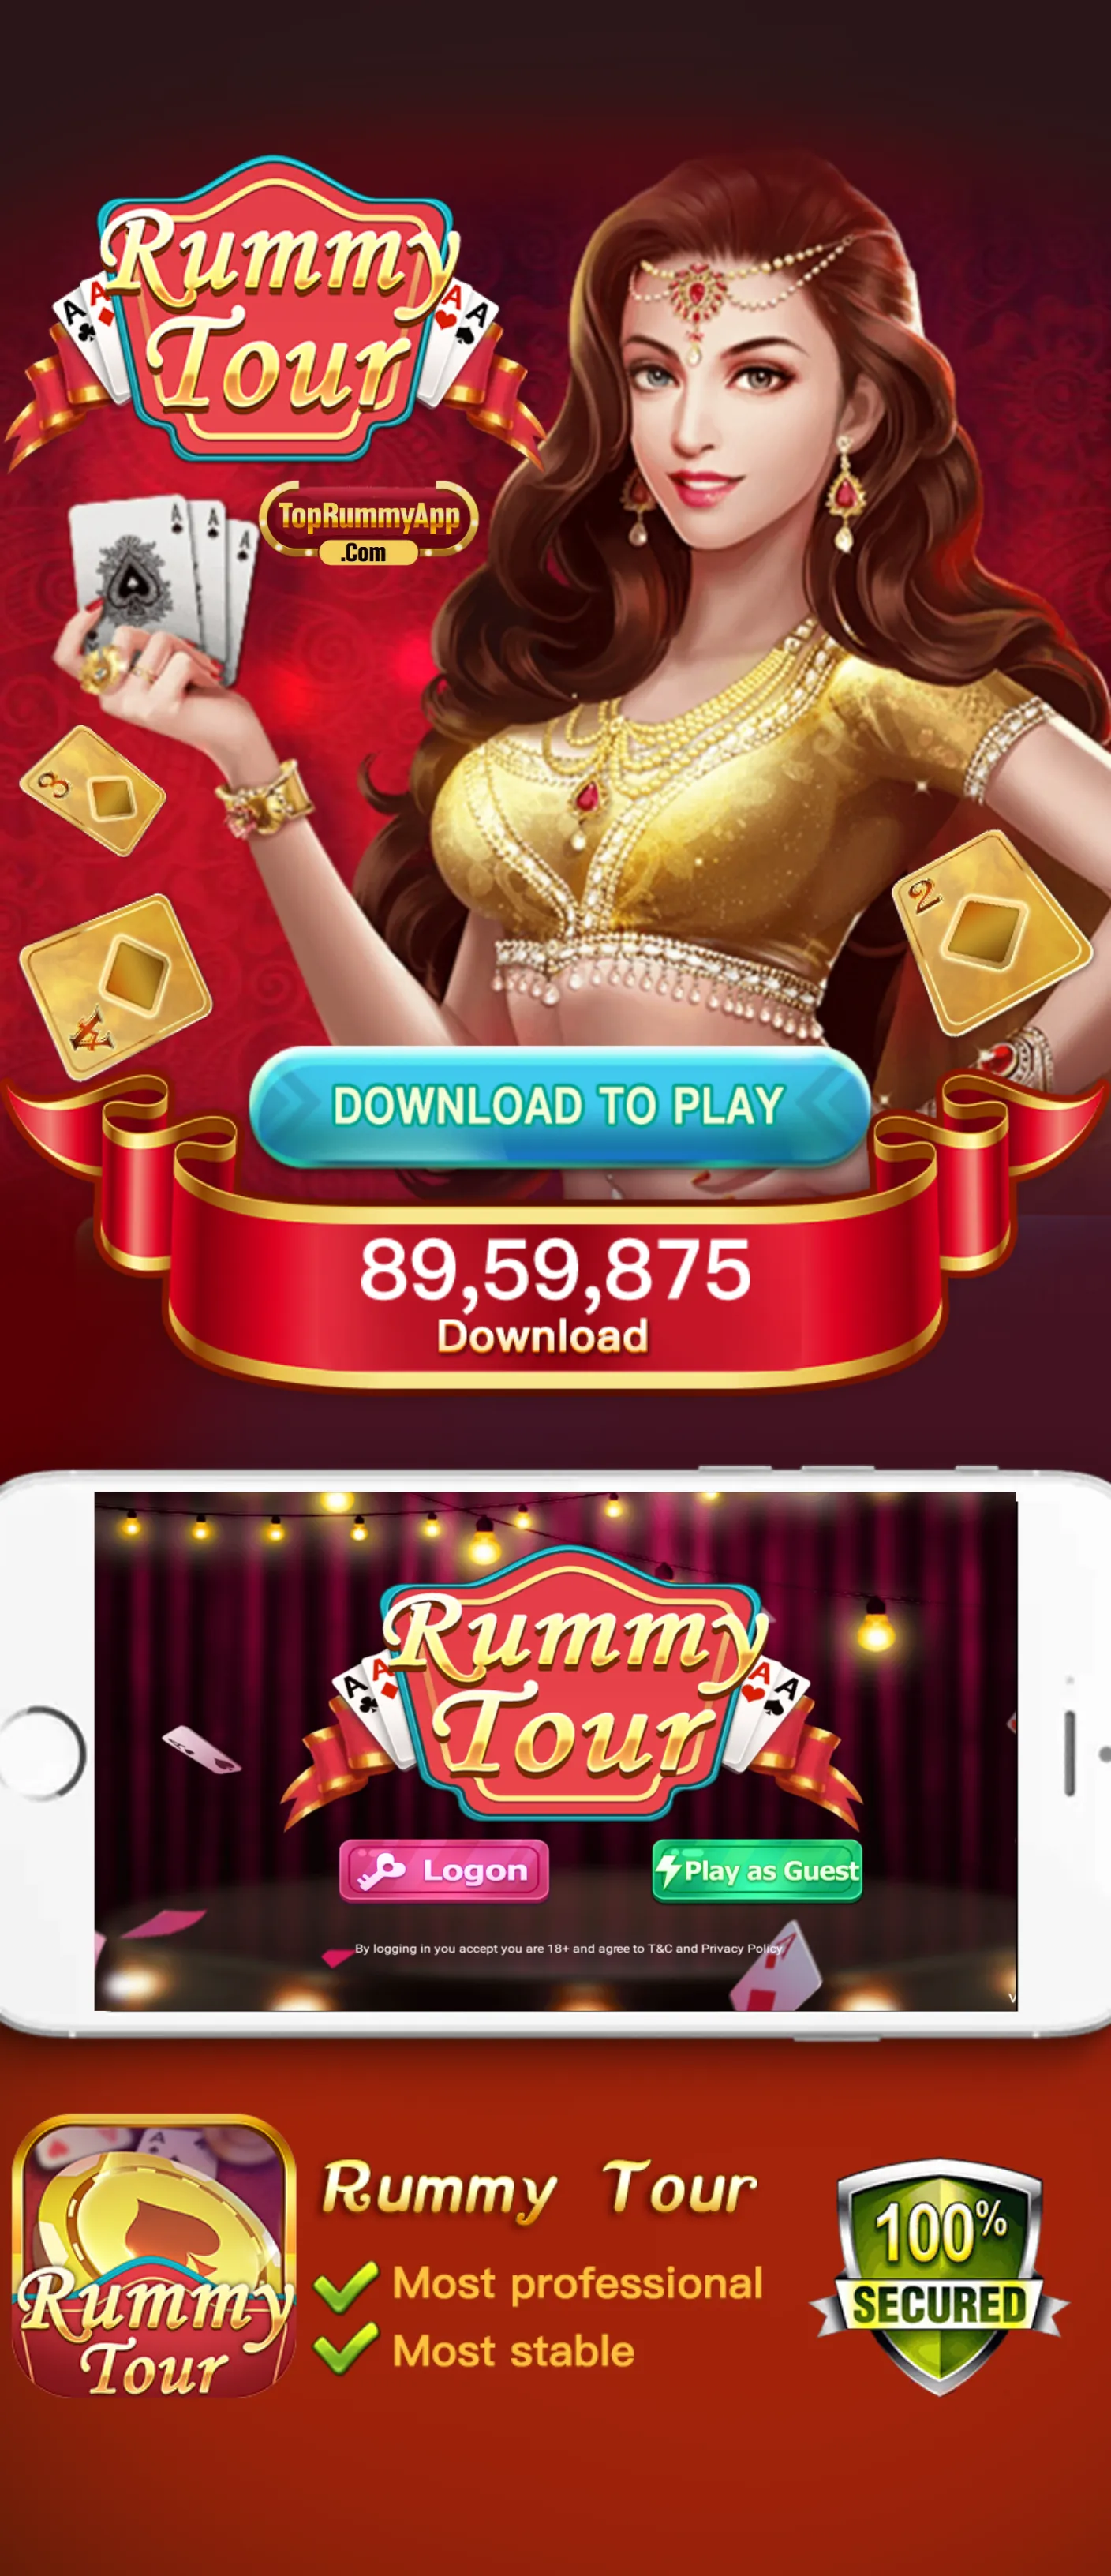 Rummy Tour App Top Rummy App